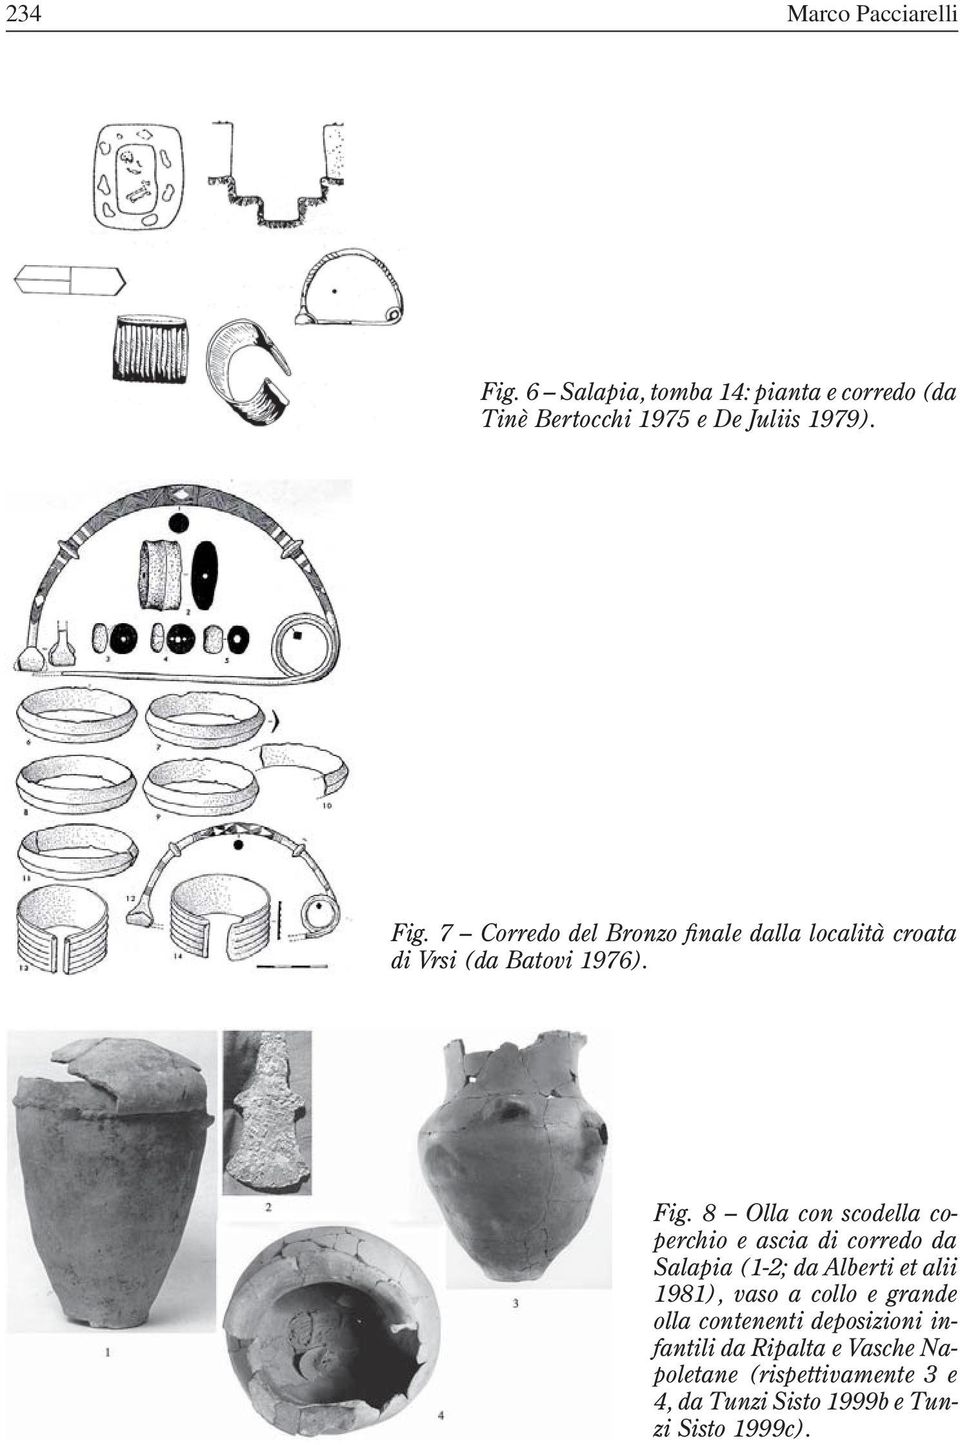 8 Olla con scodella coperchio e ascia di corredo da Salapia (1-2; da Alberti et alii 1981), vaso a collo e